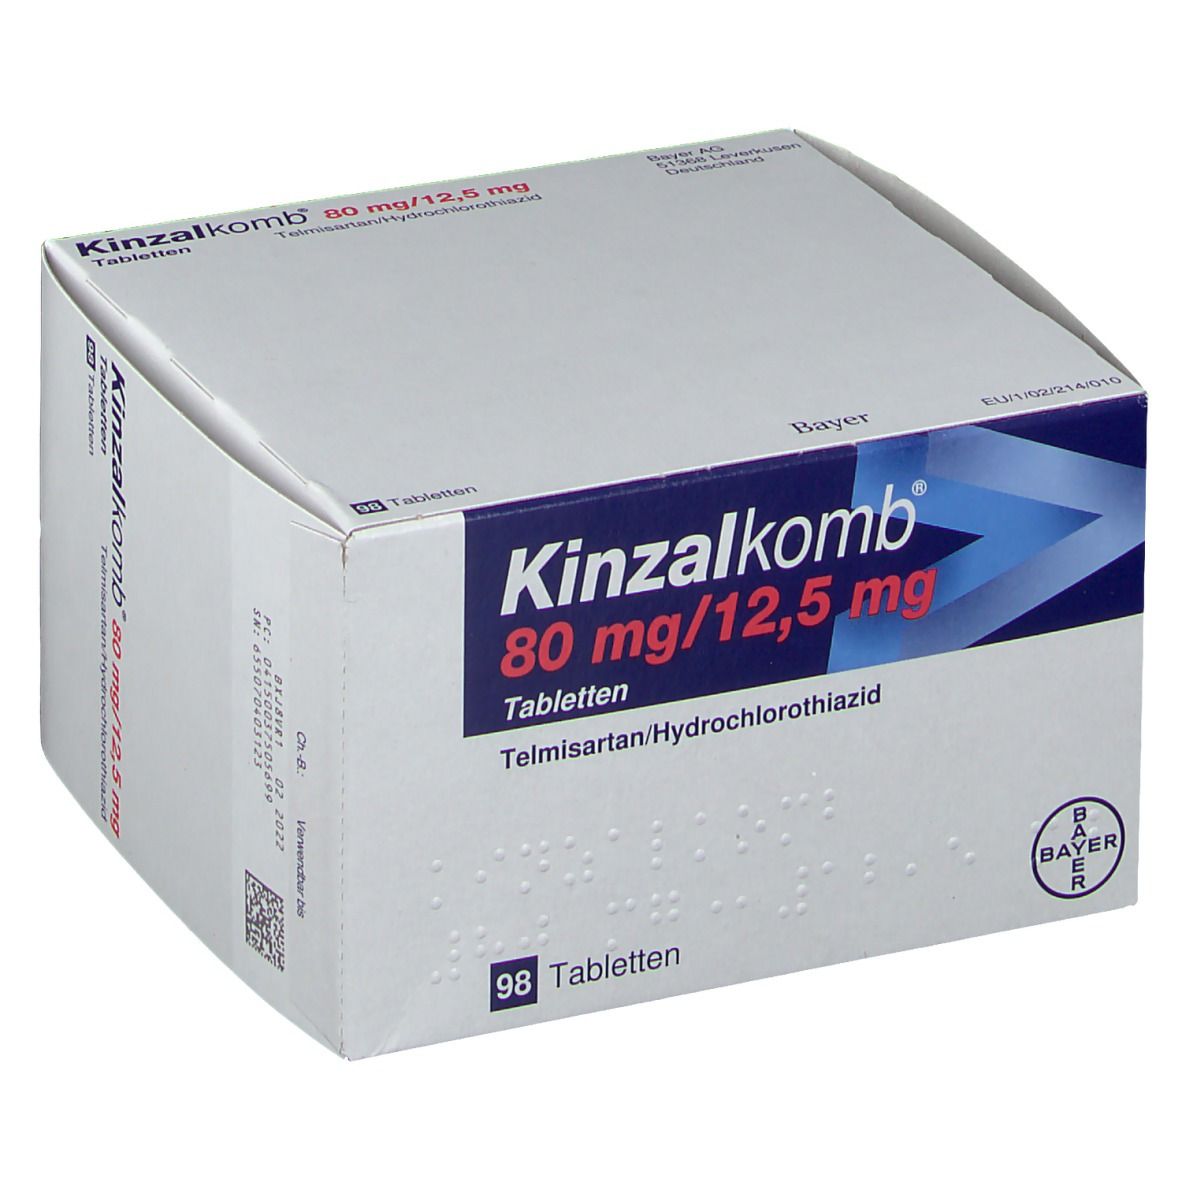 Kinzalkomb® 80 mg/12,5 mg